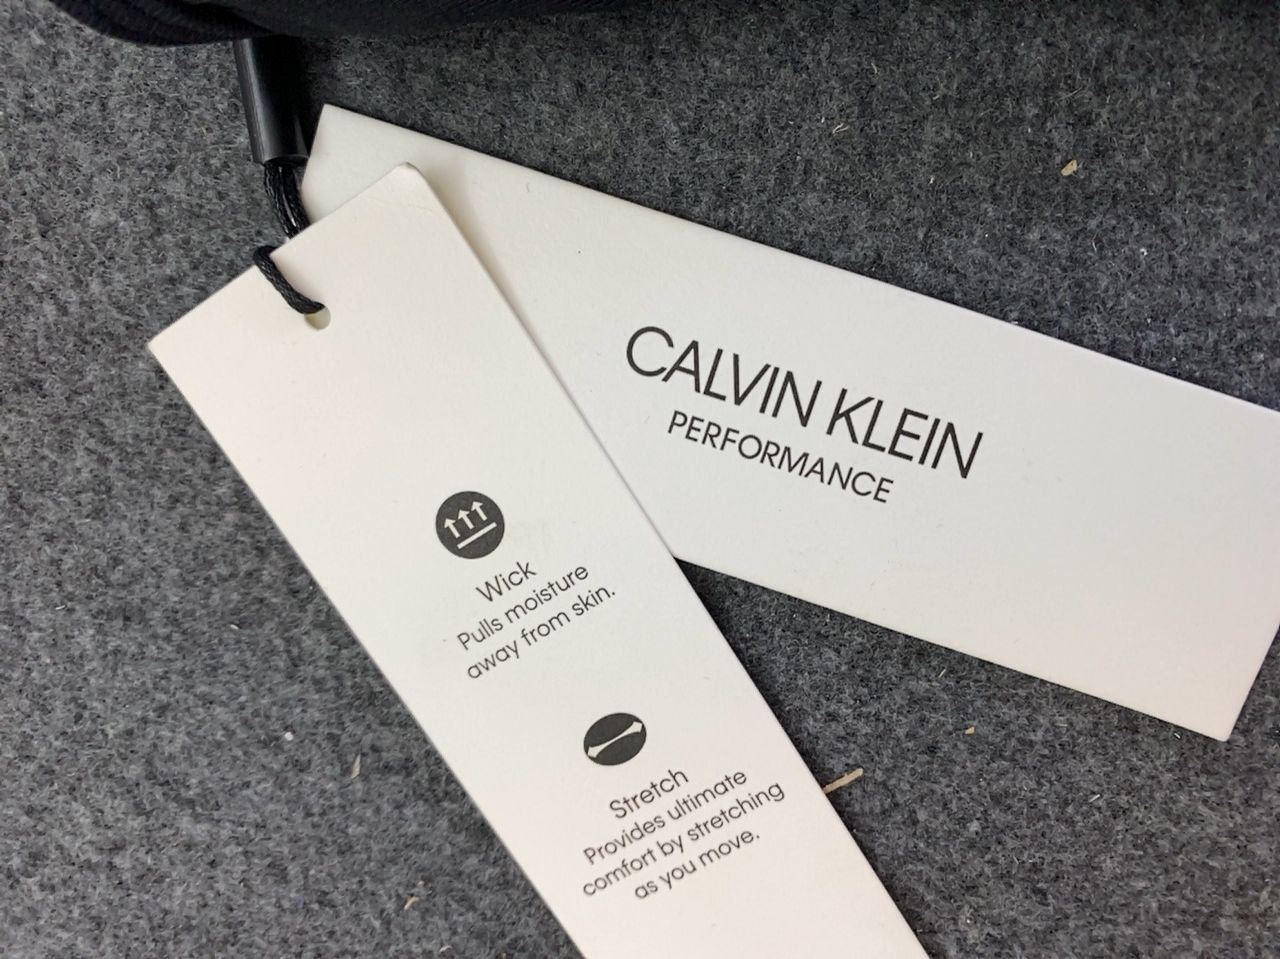 Podprsenka Calvin Klein Velikost M